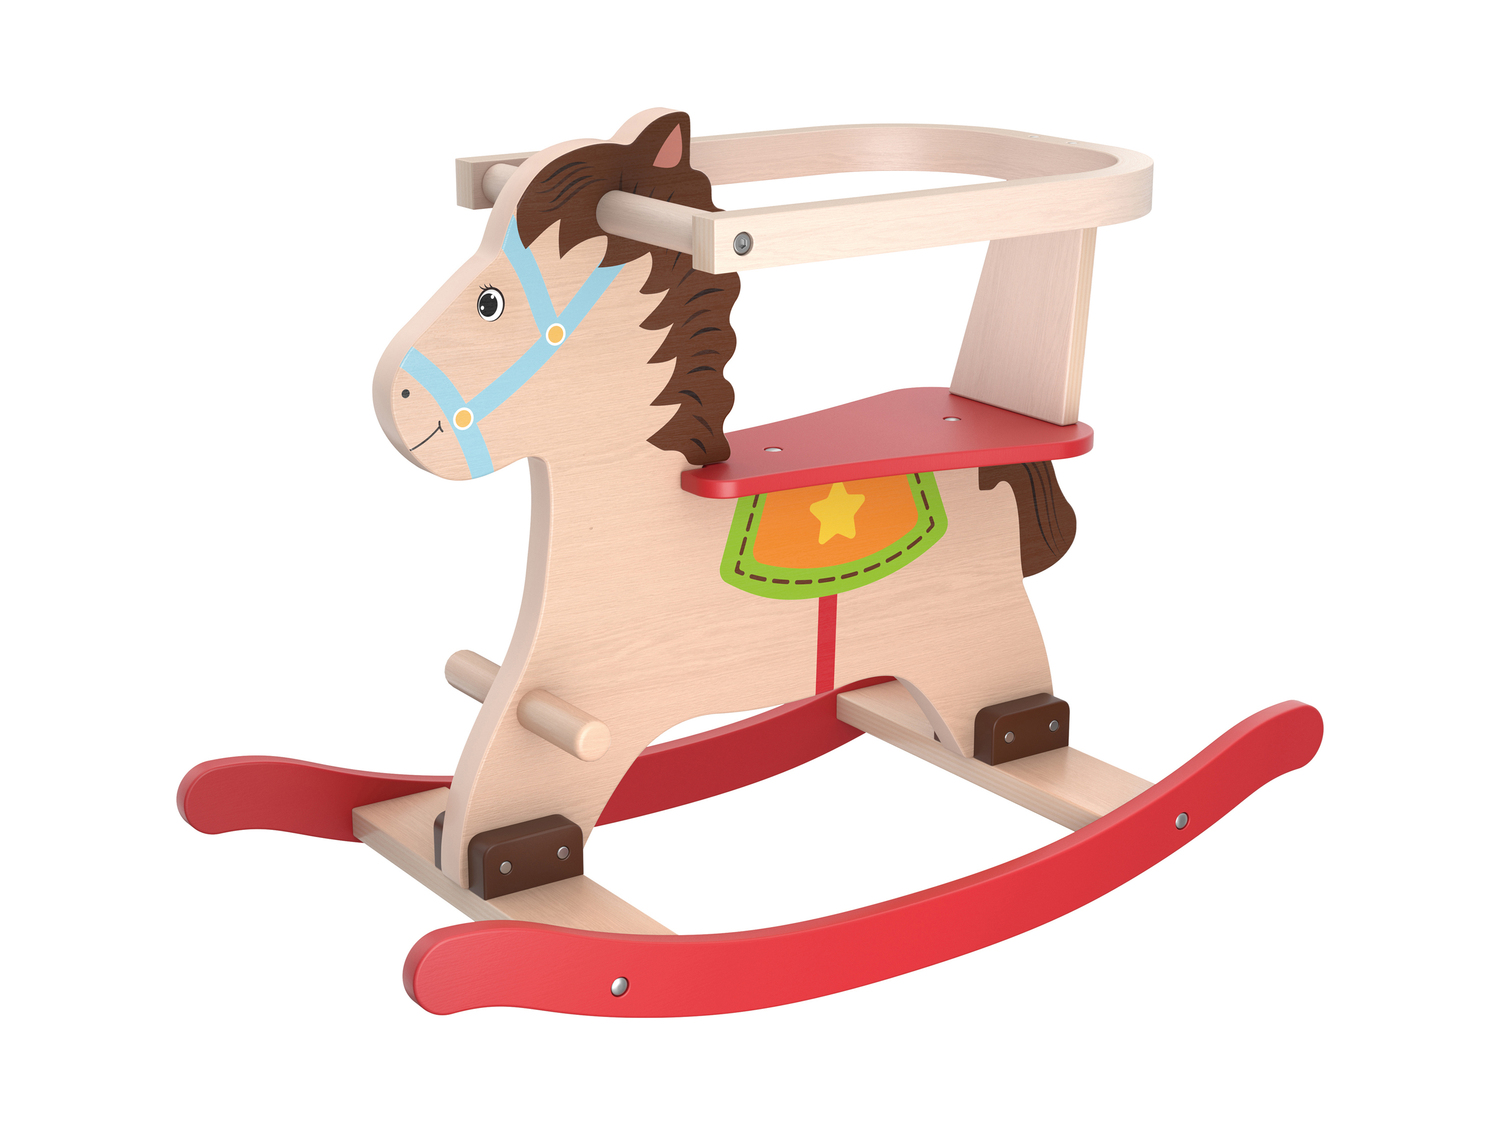 Triciclo, cavallo a dondolo o carrello primi passi in legno Playtive, prezzo 24.99 ...